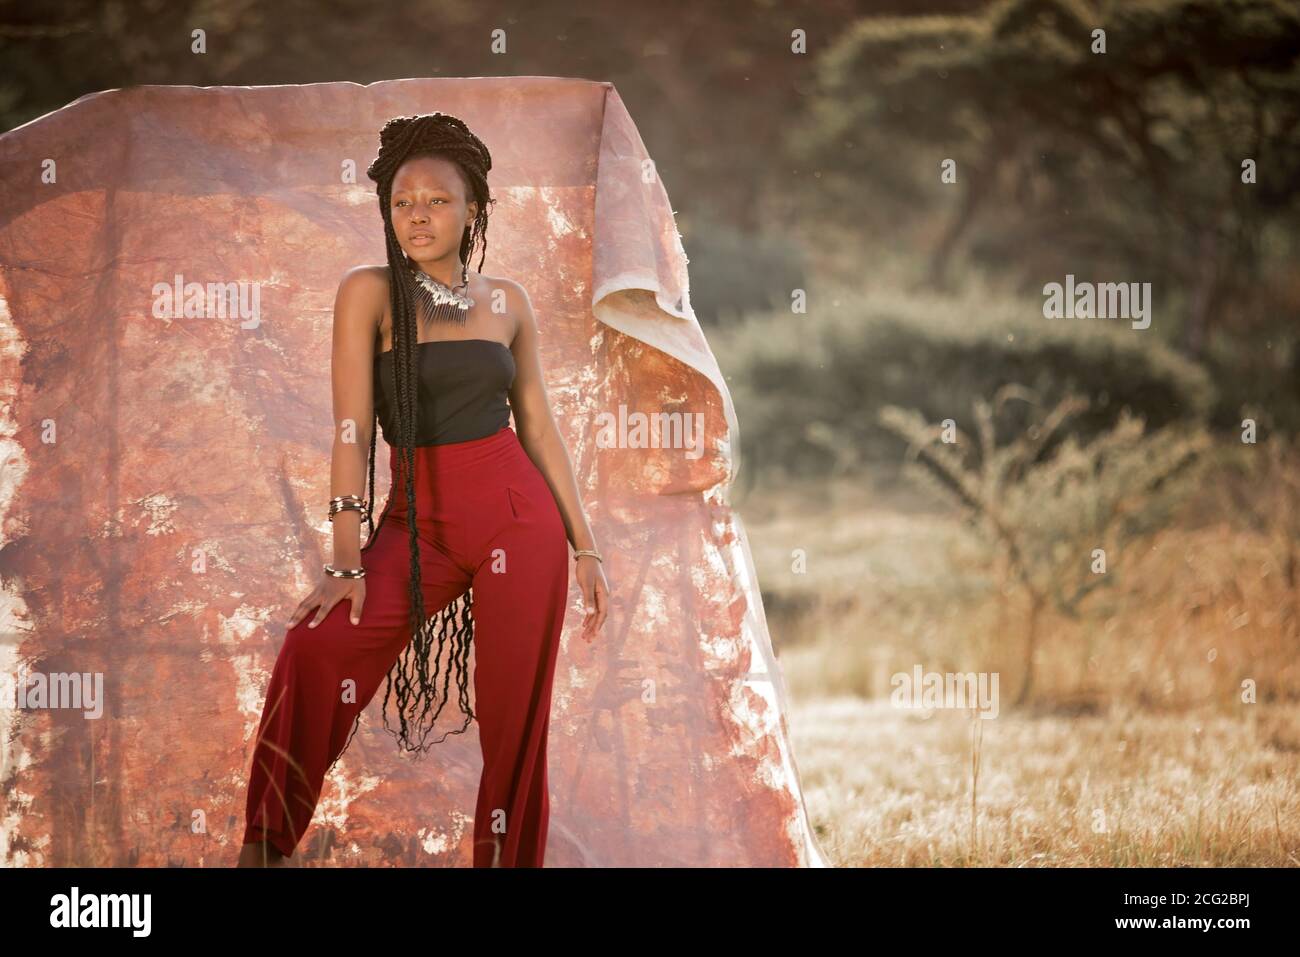 modèle réussi de femme noire en safari africain avec des bijoux africains Banque D'Images